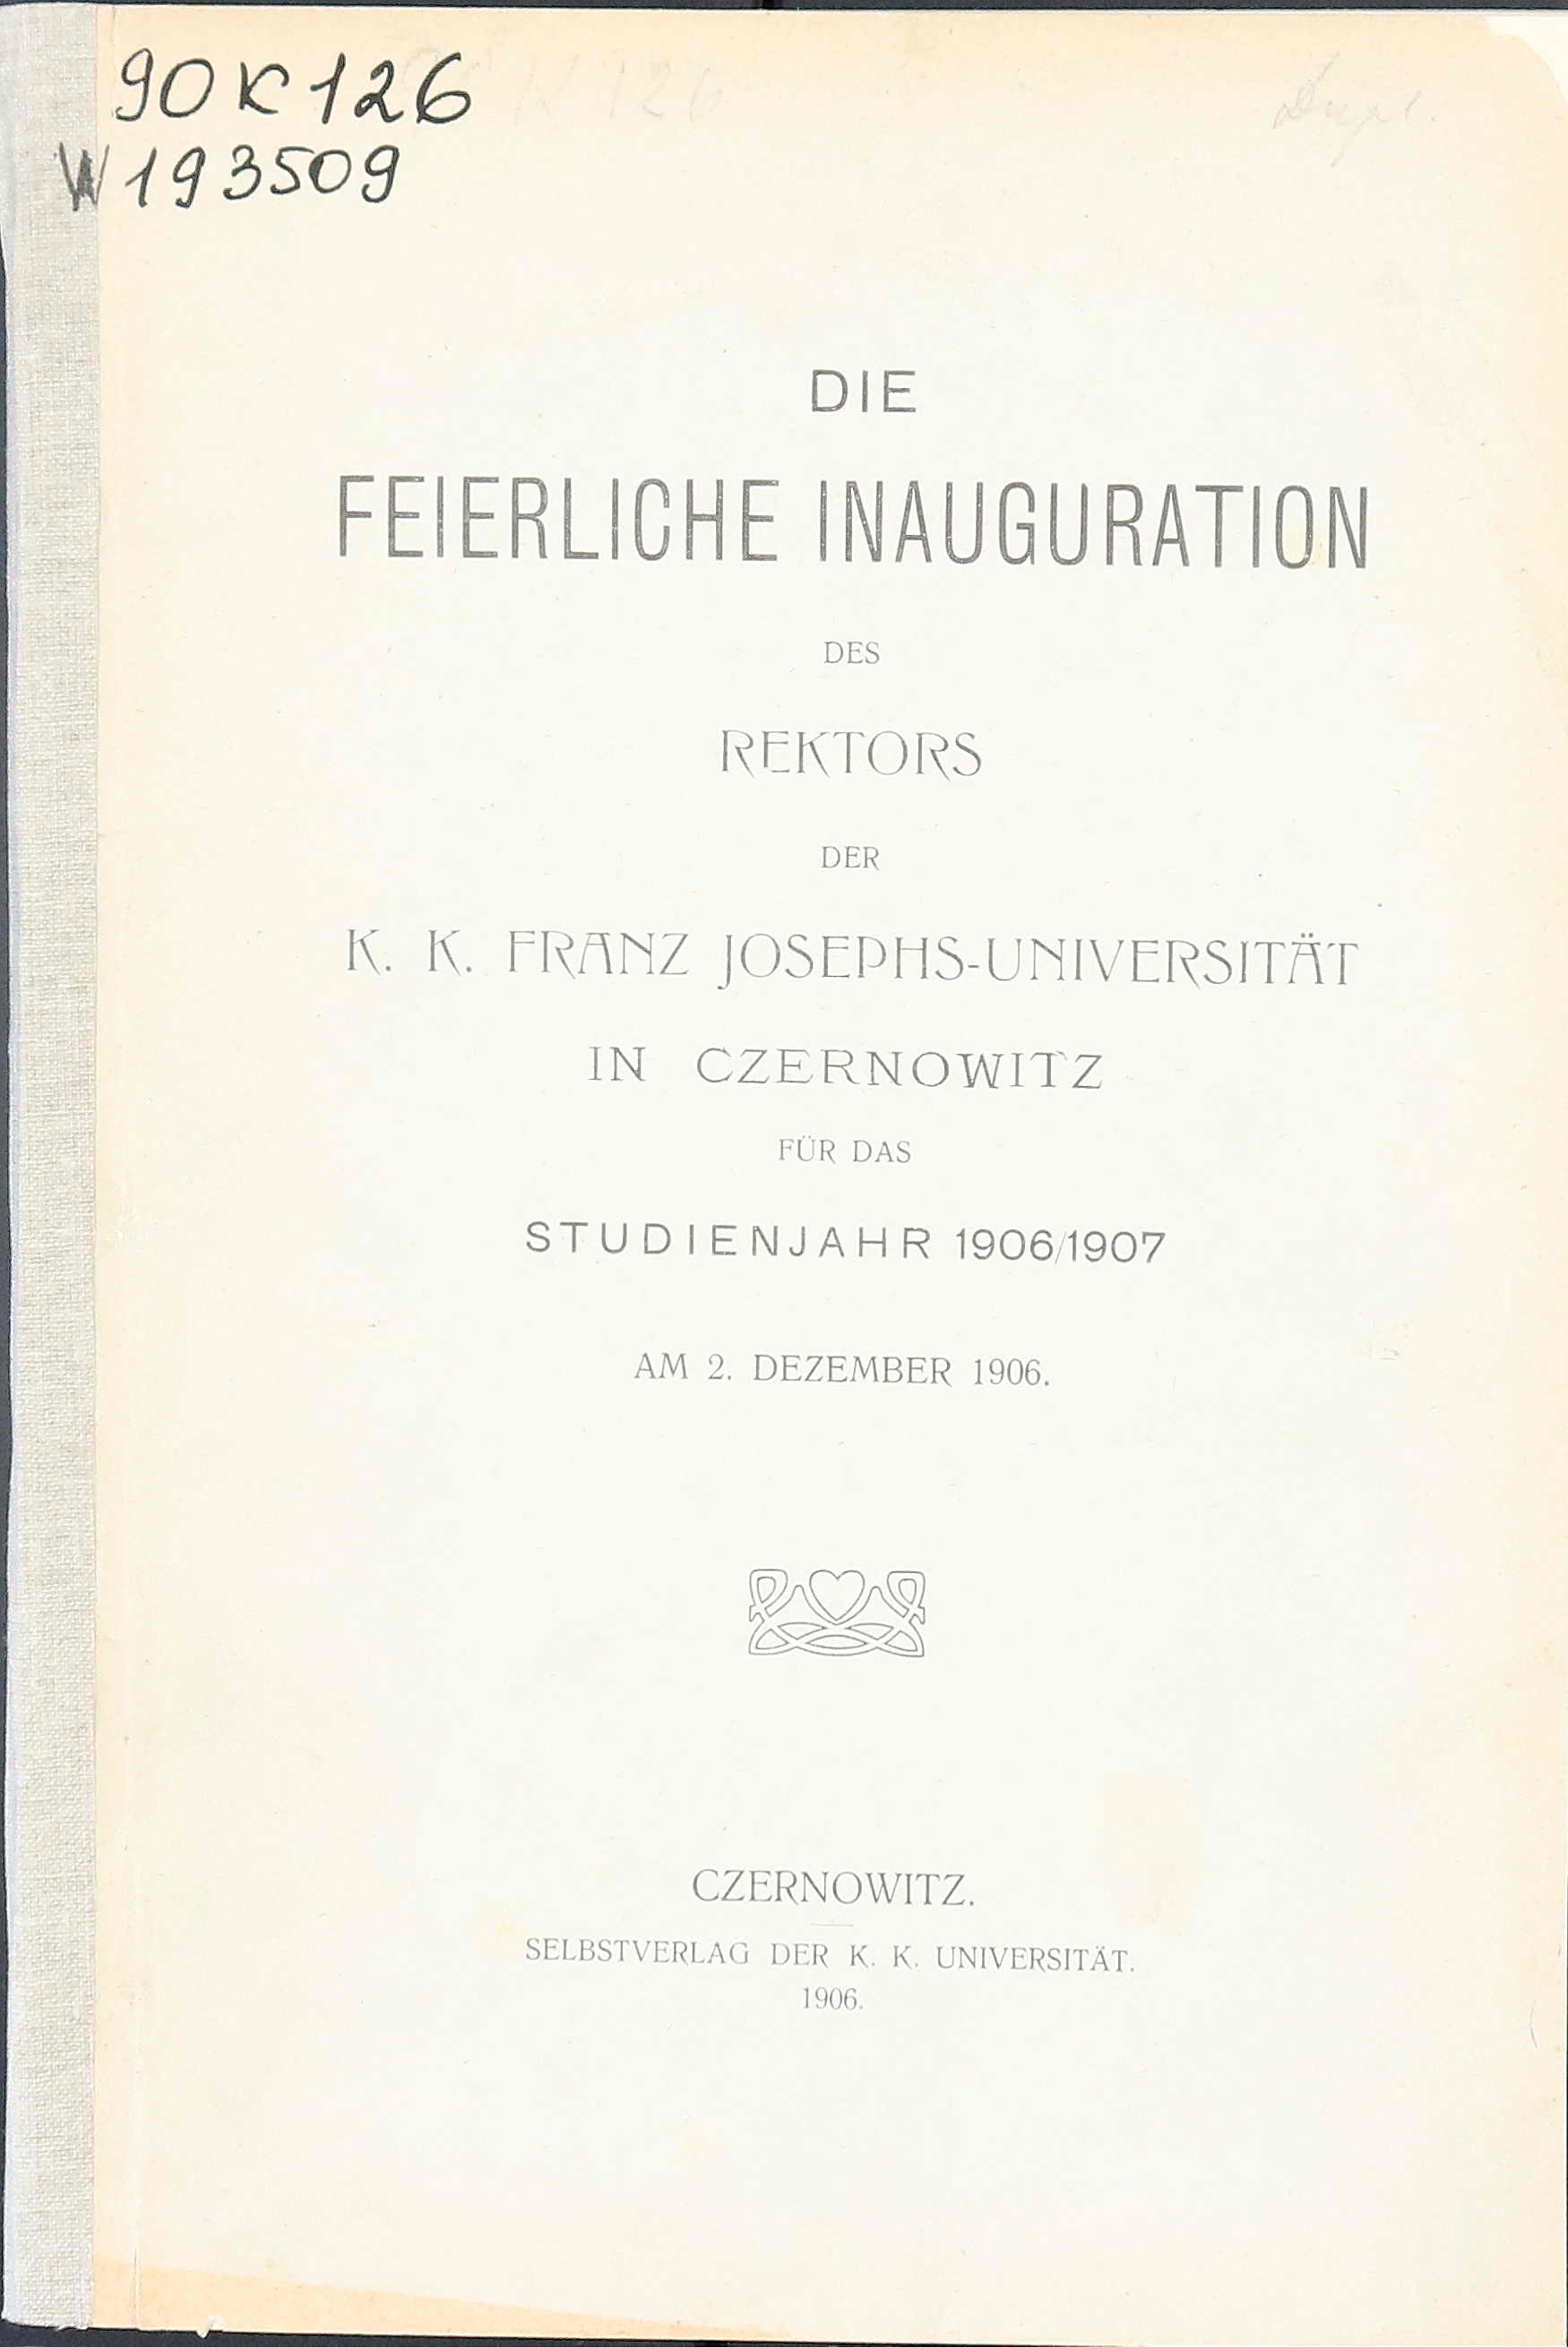 Die feierliche Inauguration des Rektors der k.k. Franz Josephs-Universität in Czernowitz für das Studienjahr 1906/1907. Am 2. Dezember 1906.